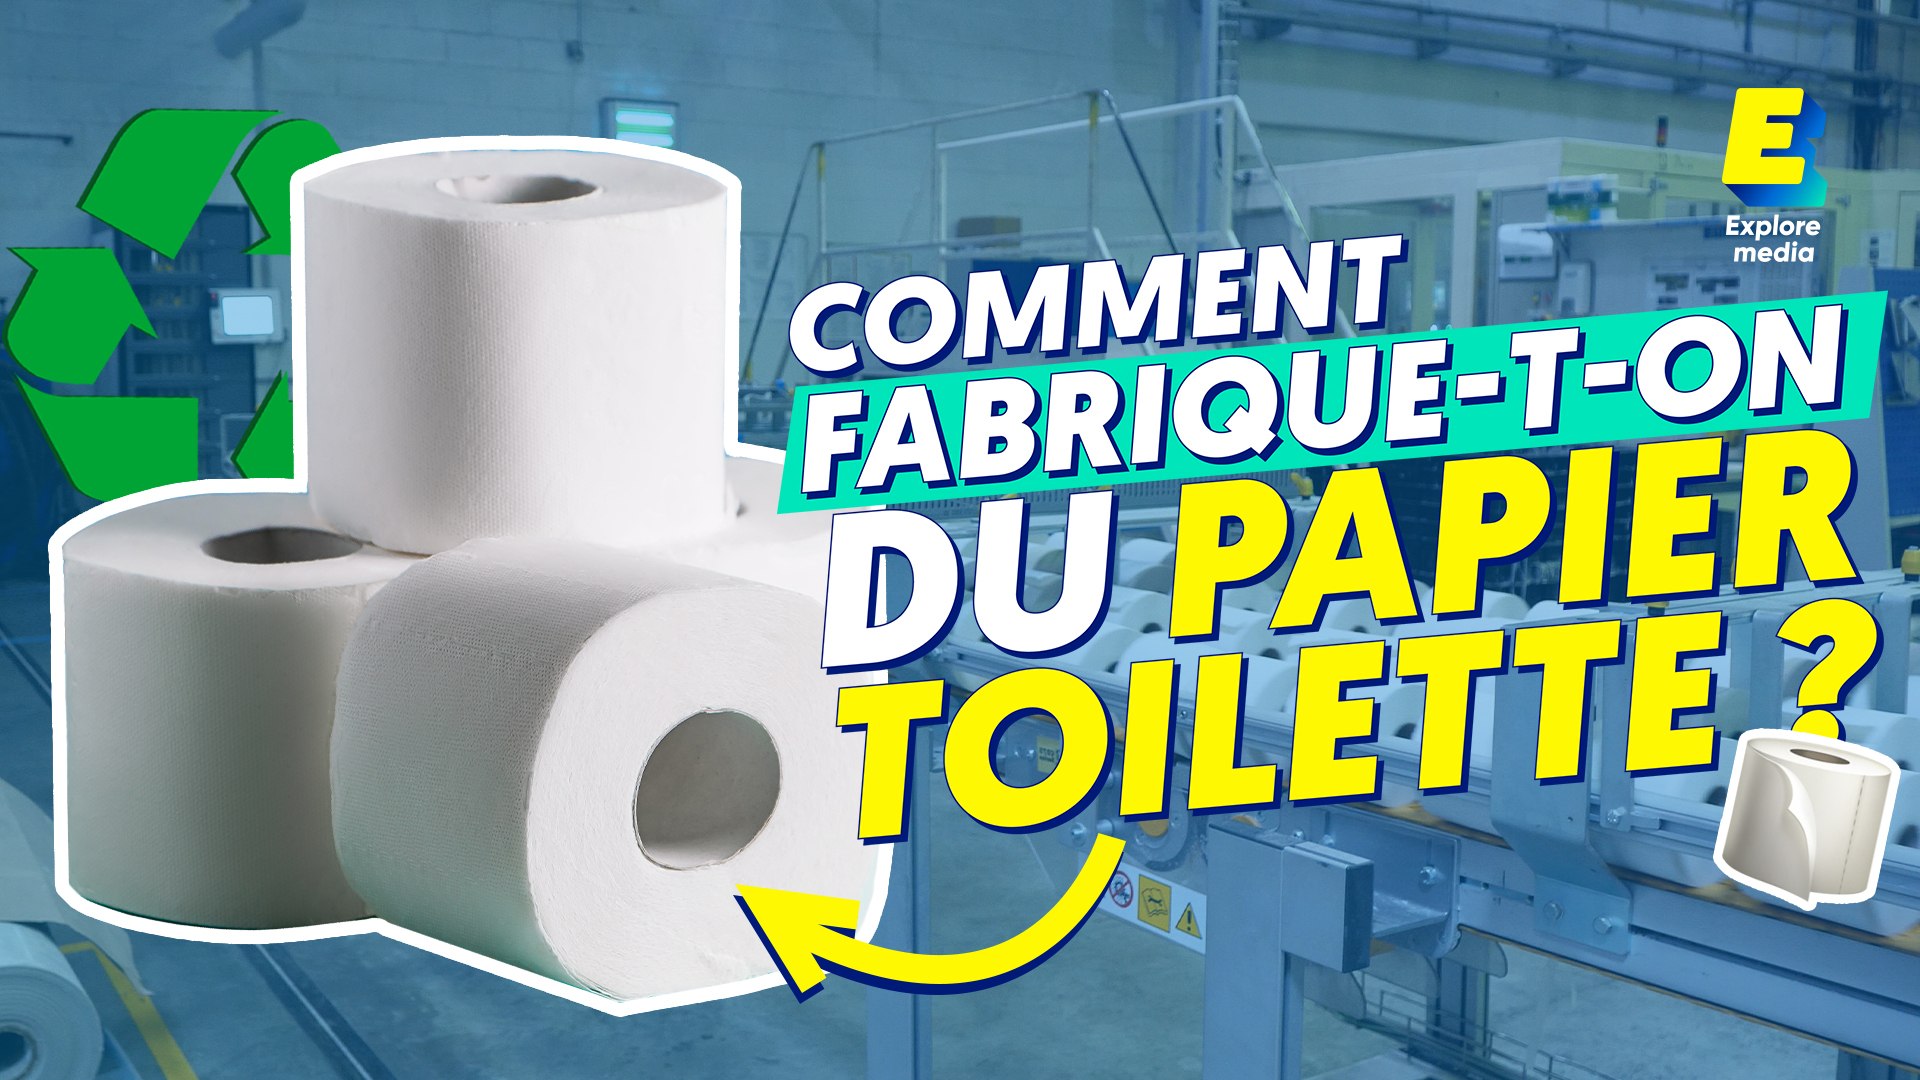 Comment fabrique-t-on le papier toilette recyclé ? - Vidéo Dailymotion